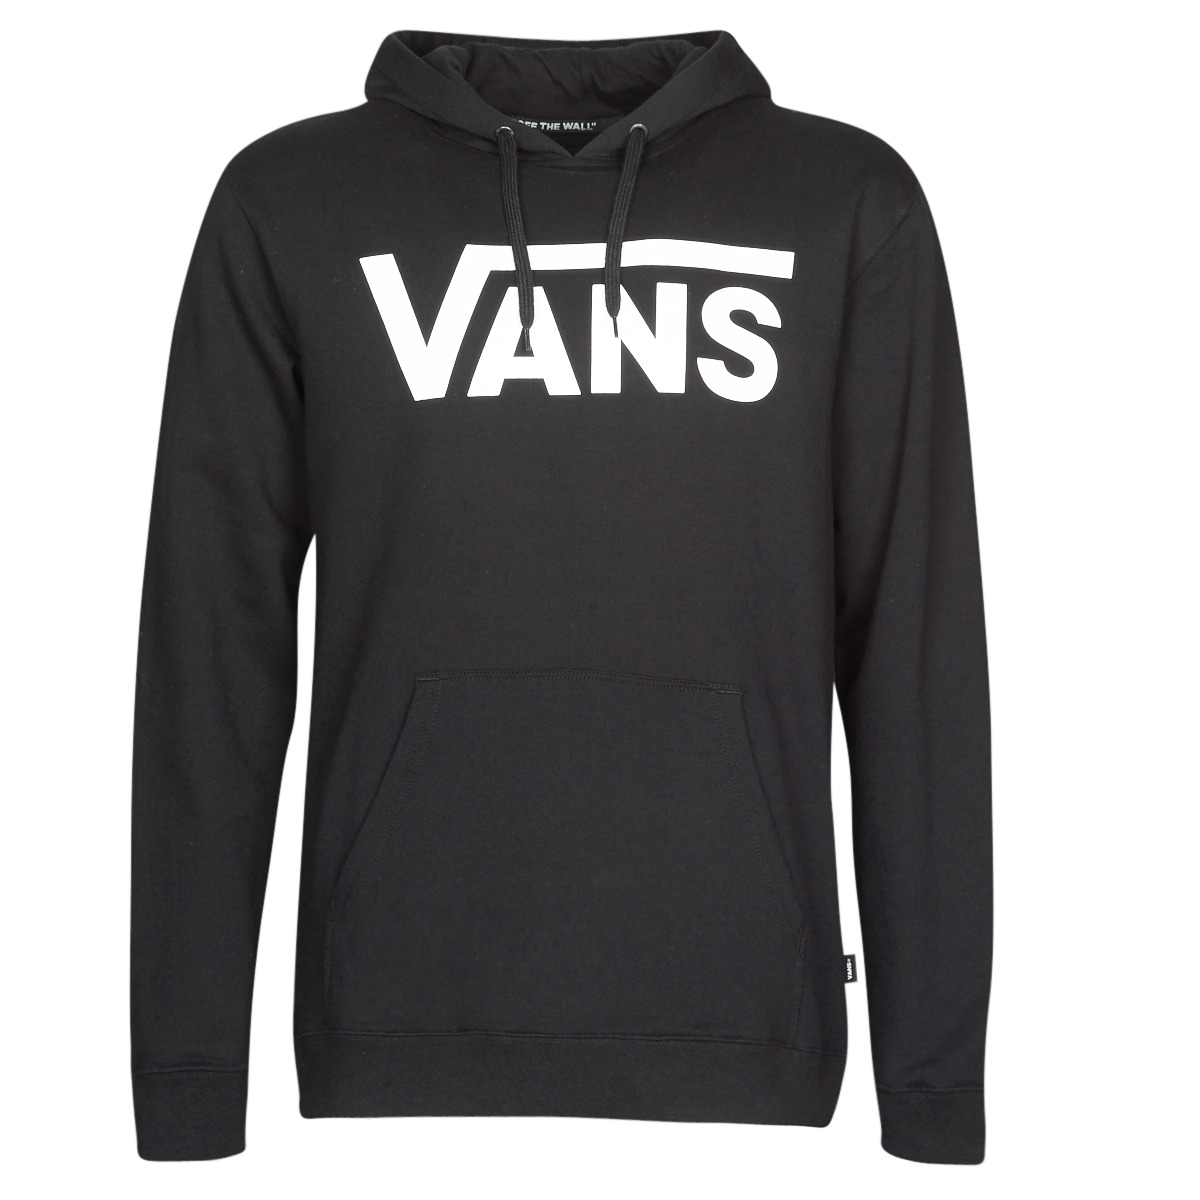 Vans VANS CLASSIC HOODIE delivery Men | - Spartoo NET II PO sweaters Black - ! Free Clothing